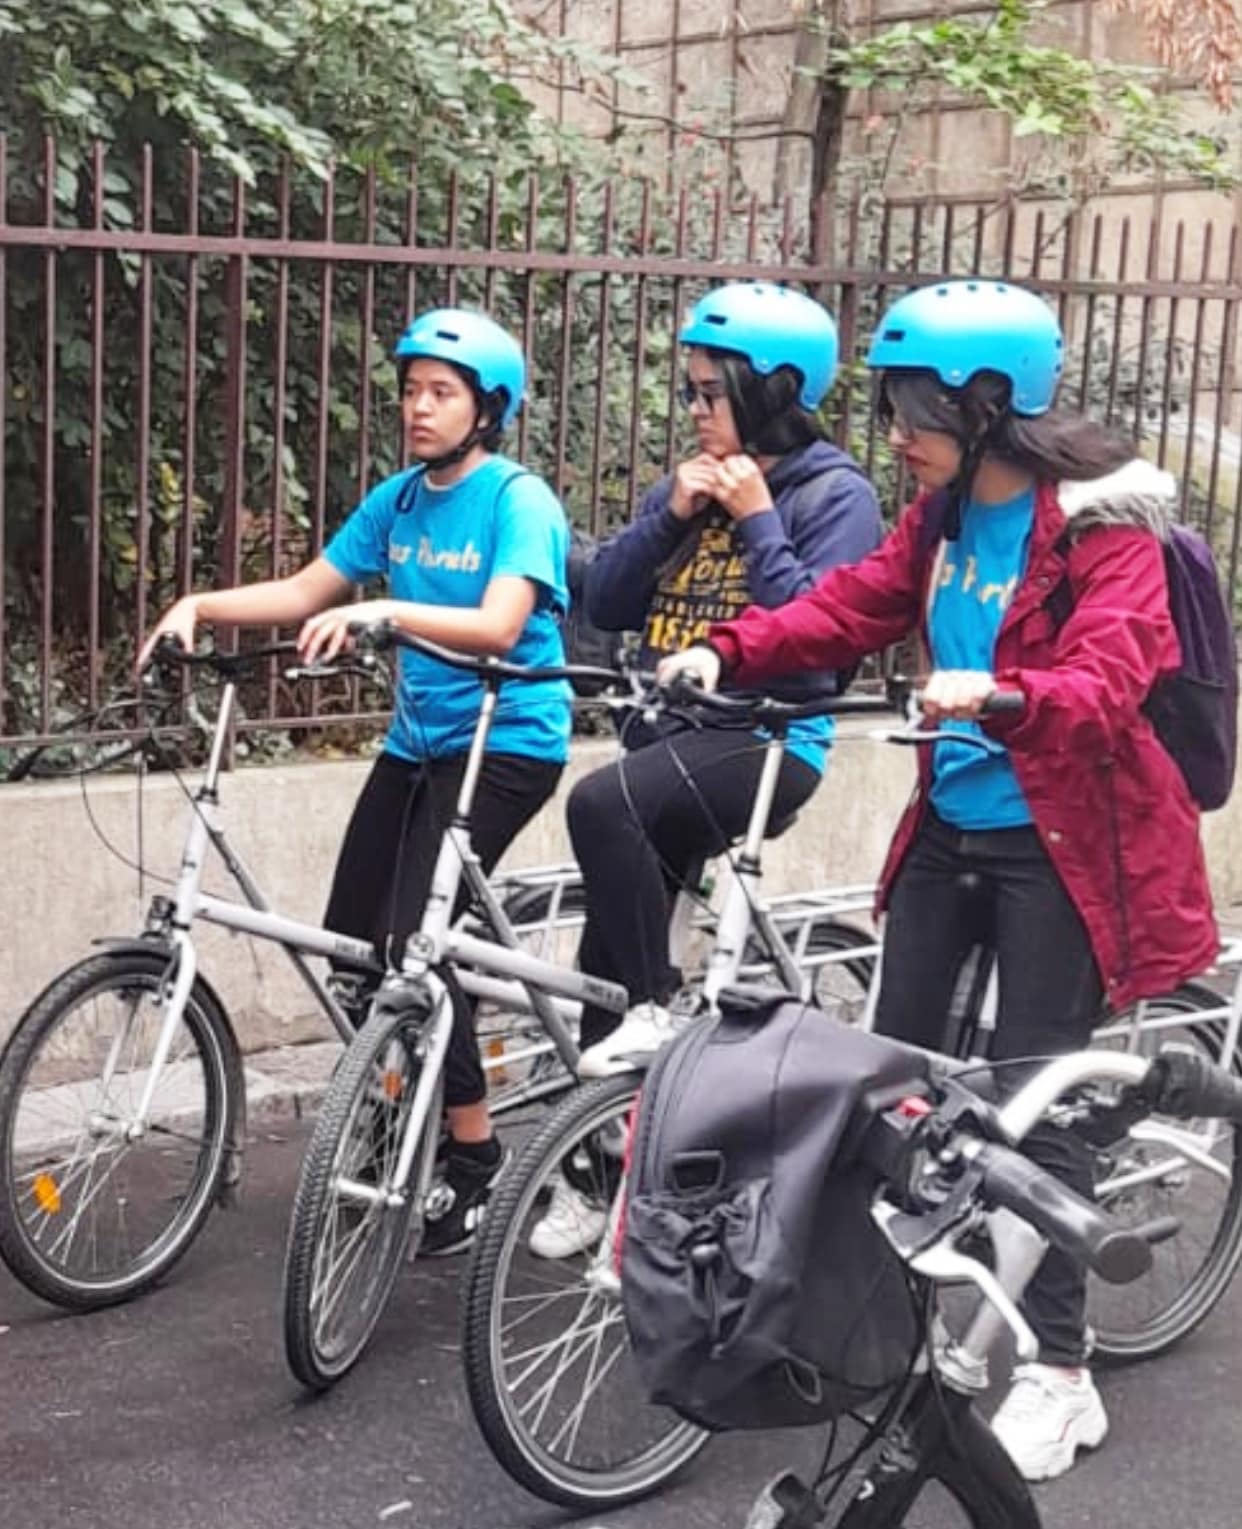 Sortie découverte de la ville de Paris en vélo, 3 habitants sur des vélos